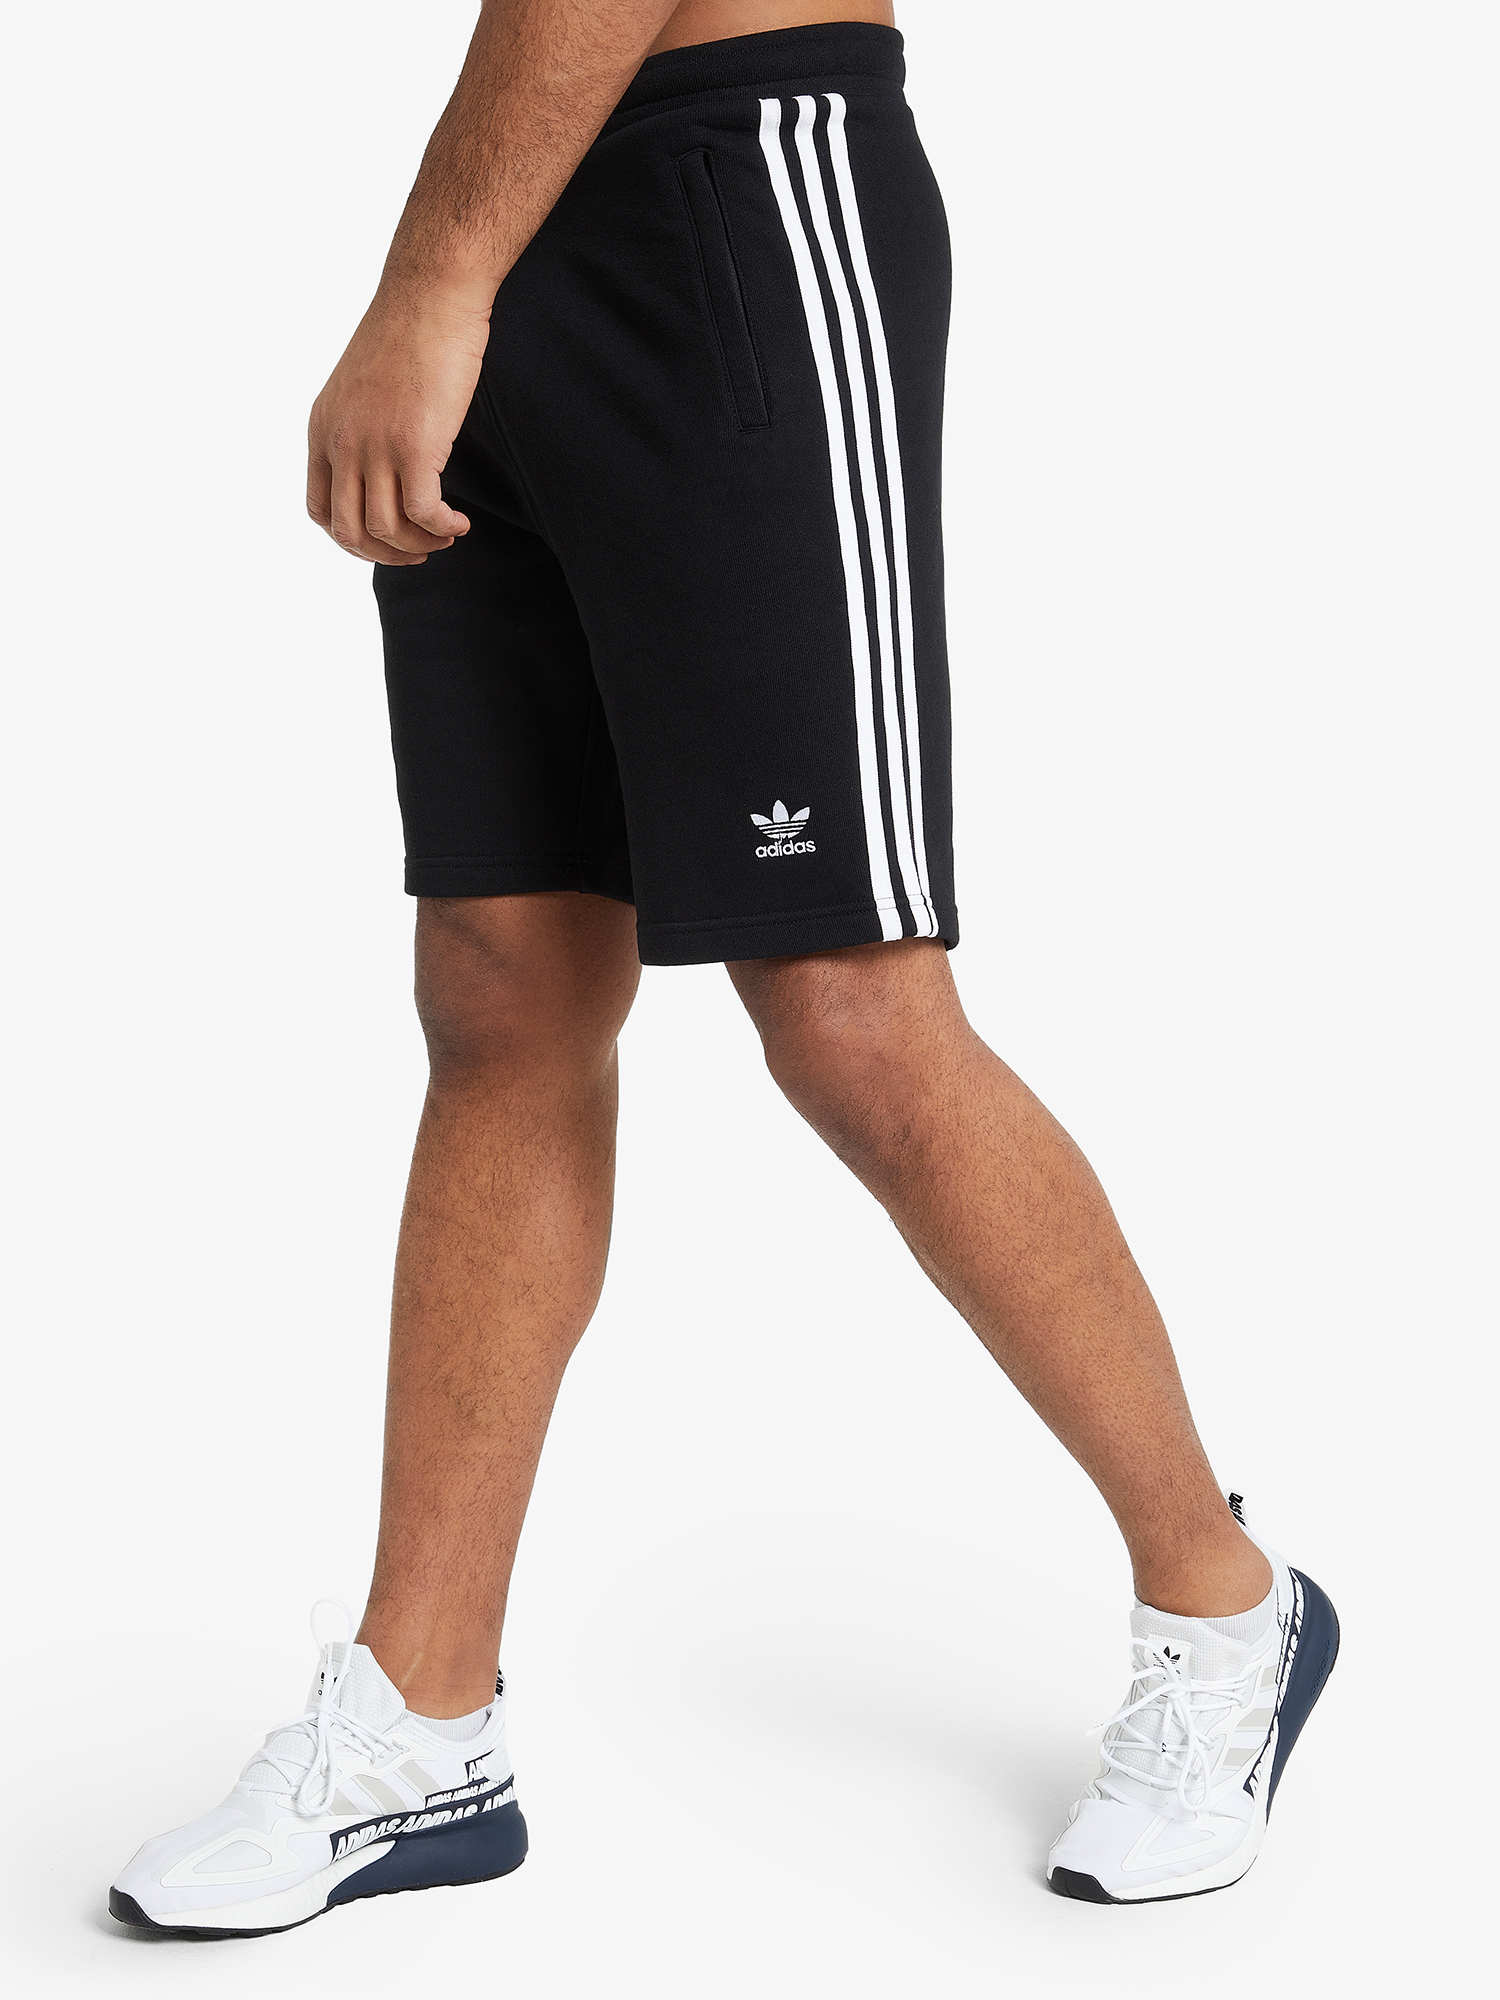 Шорты мужские adidas 3-Stripes, Черный шорты мужские adidas